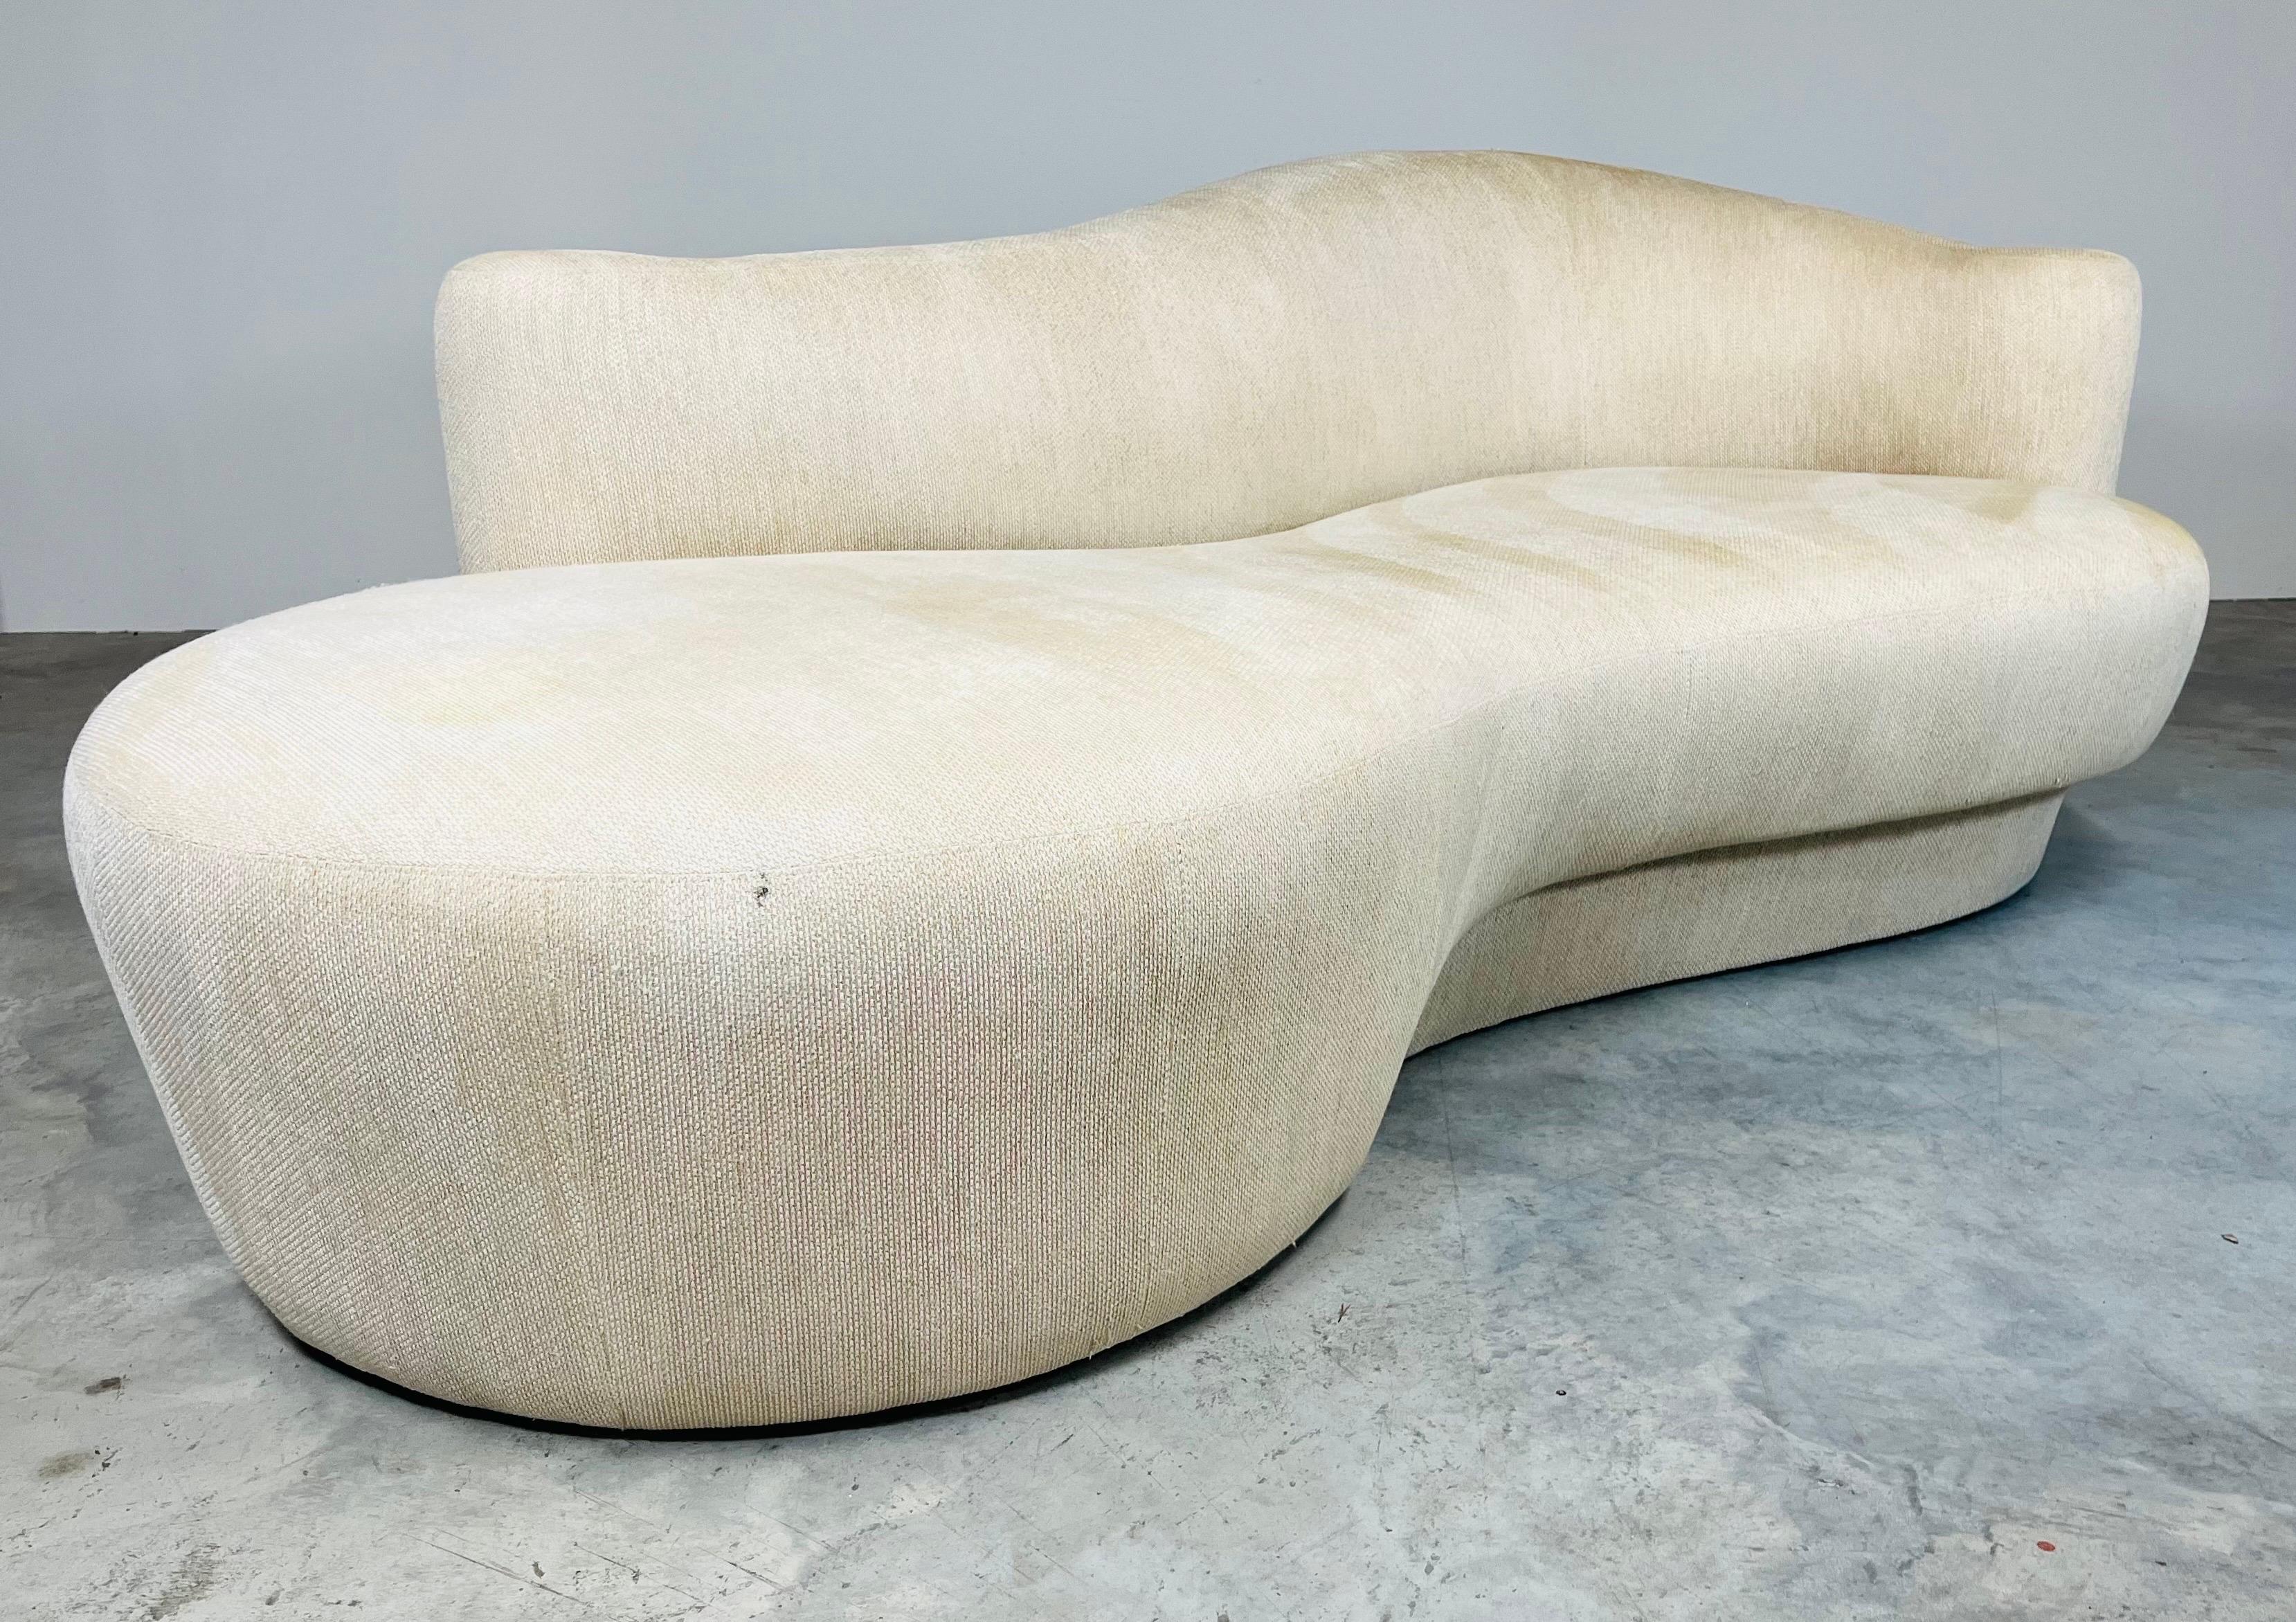 Canapé chaise sculptural de Weiman aux lignes sculpturales courbes et glamour et à la structure de conception incroyablement confortable. Fabriqué par Weiman vers 1990. 
En très bon état à l'exception de quelques taches au niveau des pieds qui n'ont